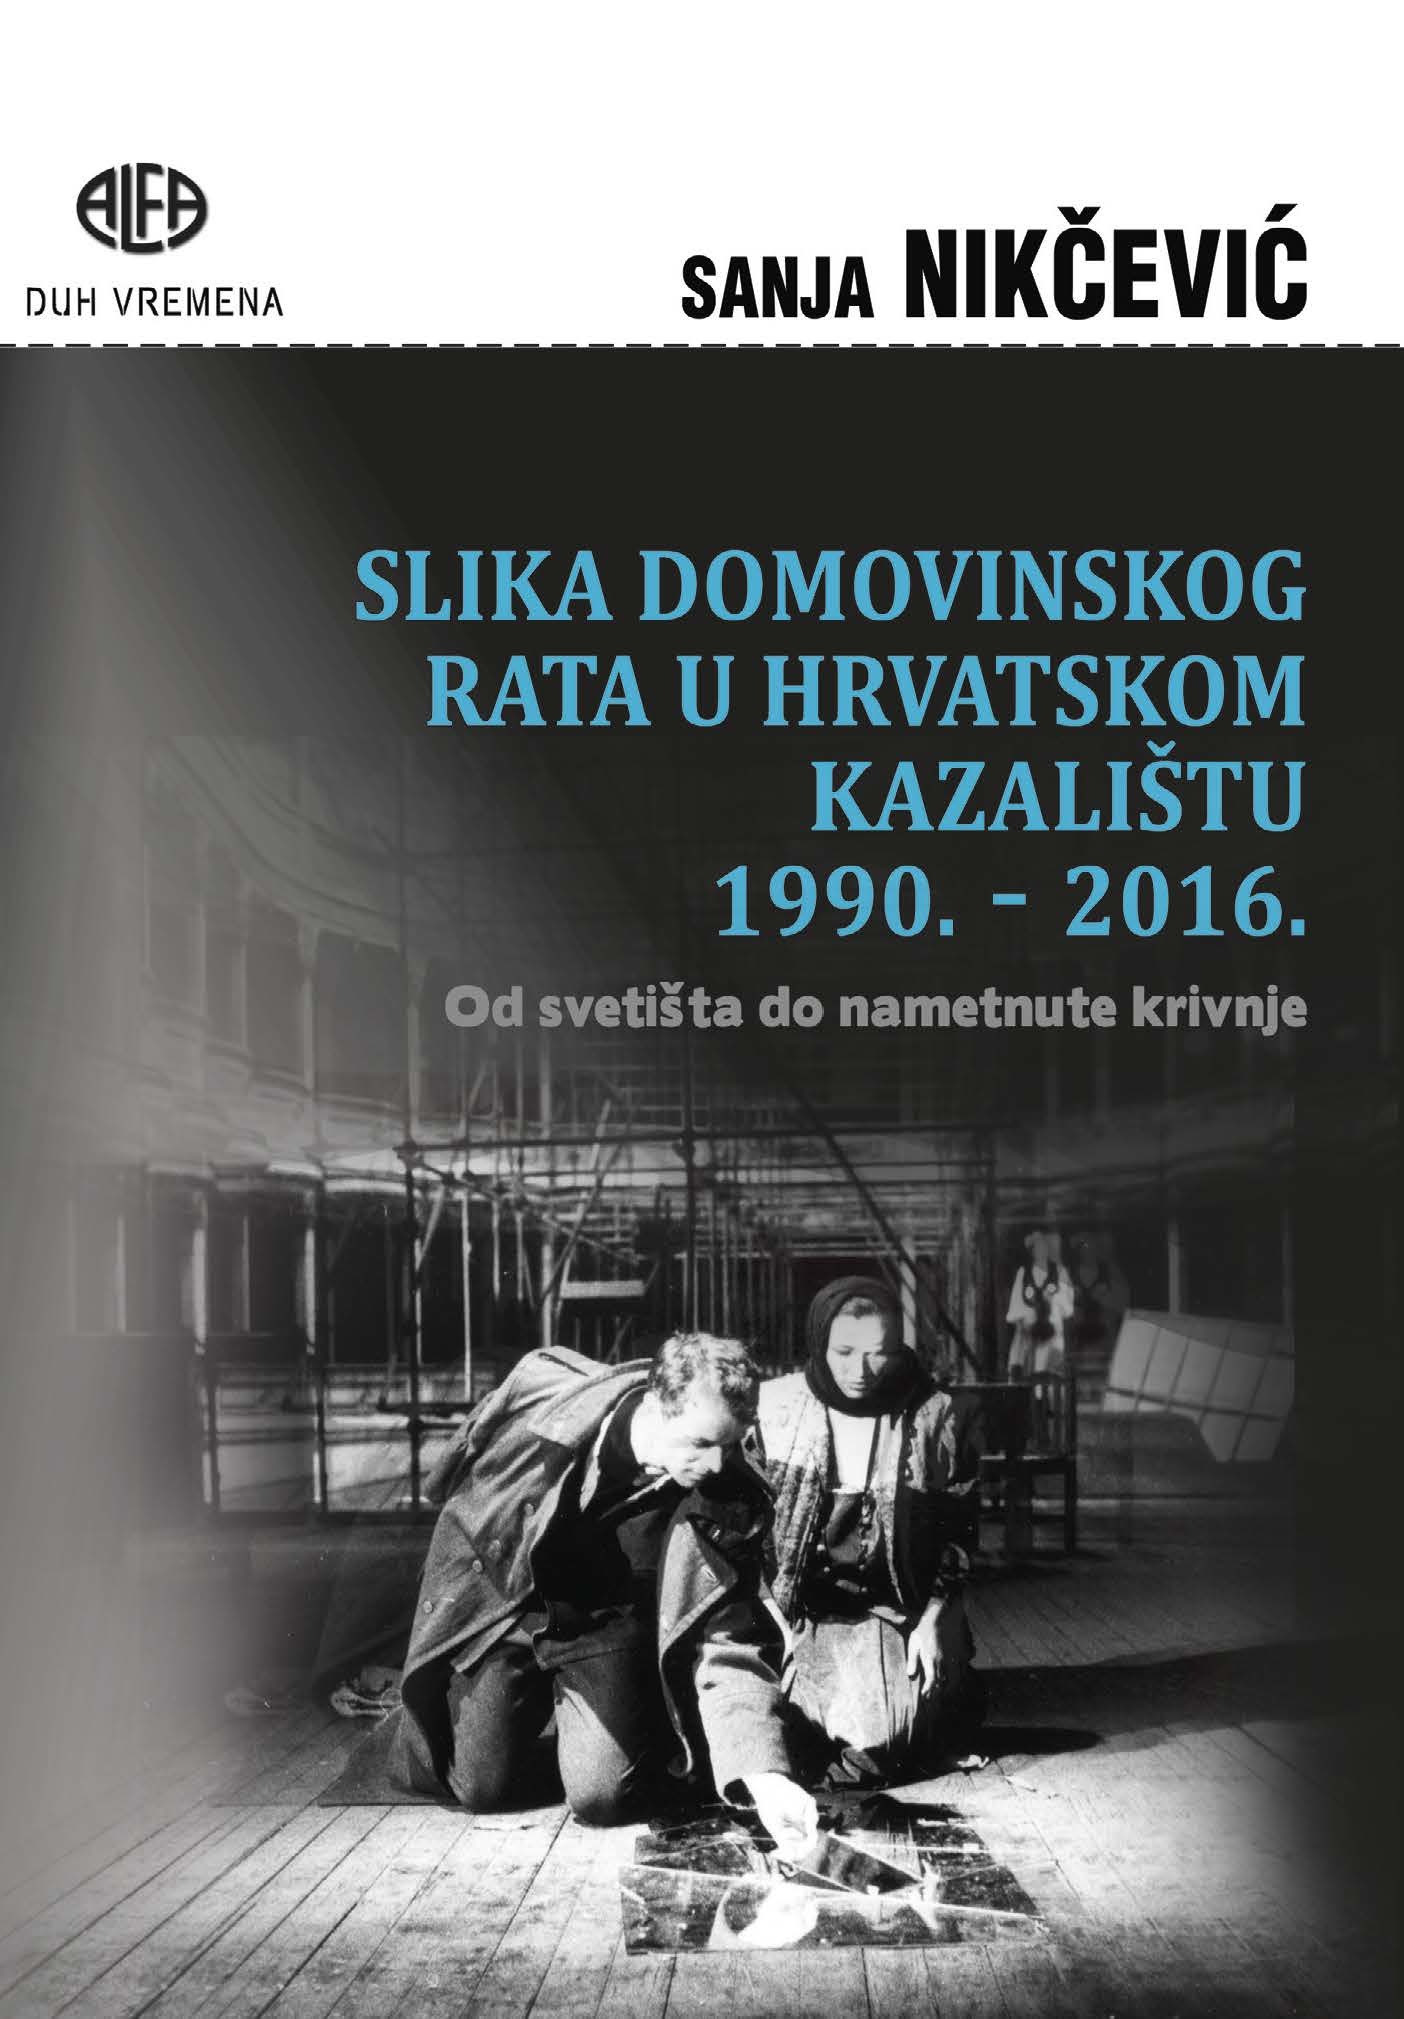 SLIKA DOMOVINSKOG RATA U HRVATSKOM KAZALIŠTU 1990. - 2016.